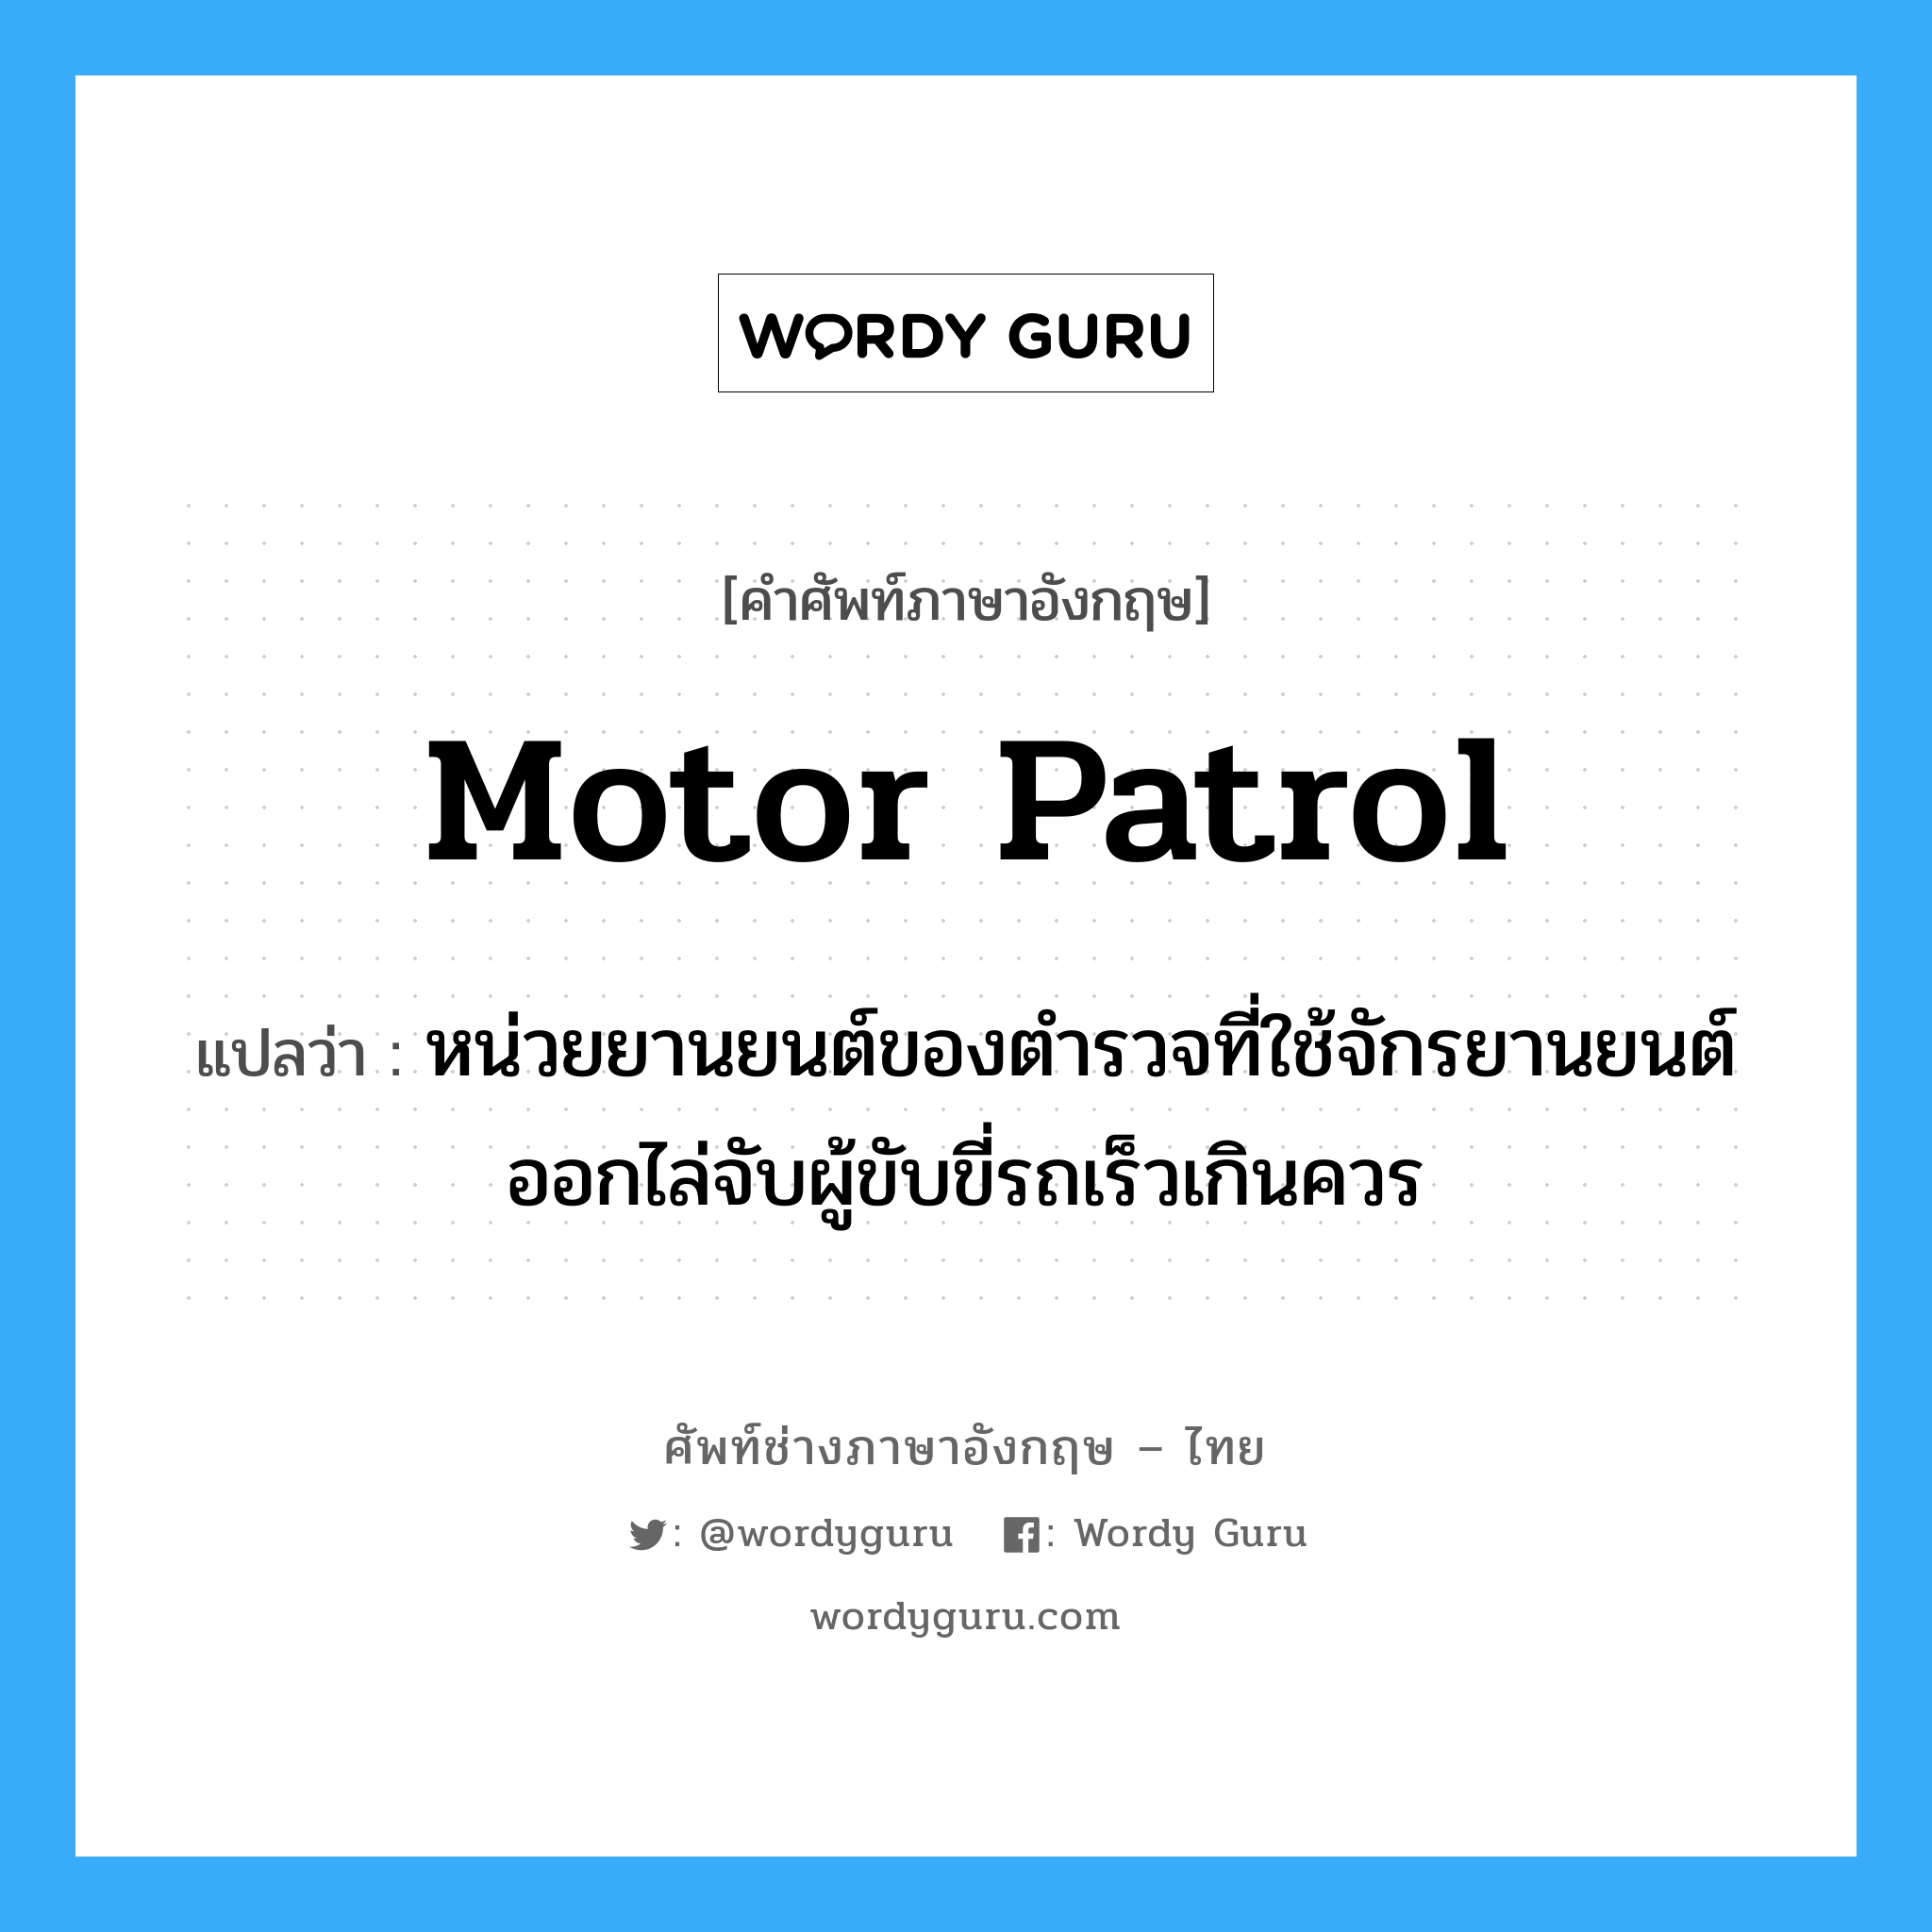 Motor Patrol แปลว่า?, คำศัพท์ช่างภาษาอังกฤษ - ไทย Motor Patrol คำศัพท์ภาษาอังกฤษ Motor Patrol แปลว่า หน่วยยานยนต์ของตำรวจที่ใช้จักรยานยนต์ออกไล่จับผู้ขับขี่รถเร็วเกินควร